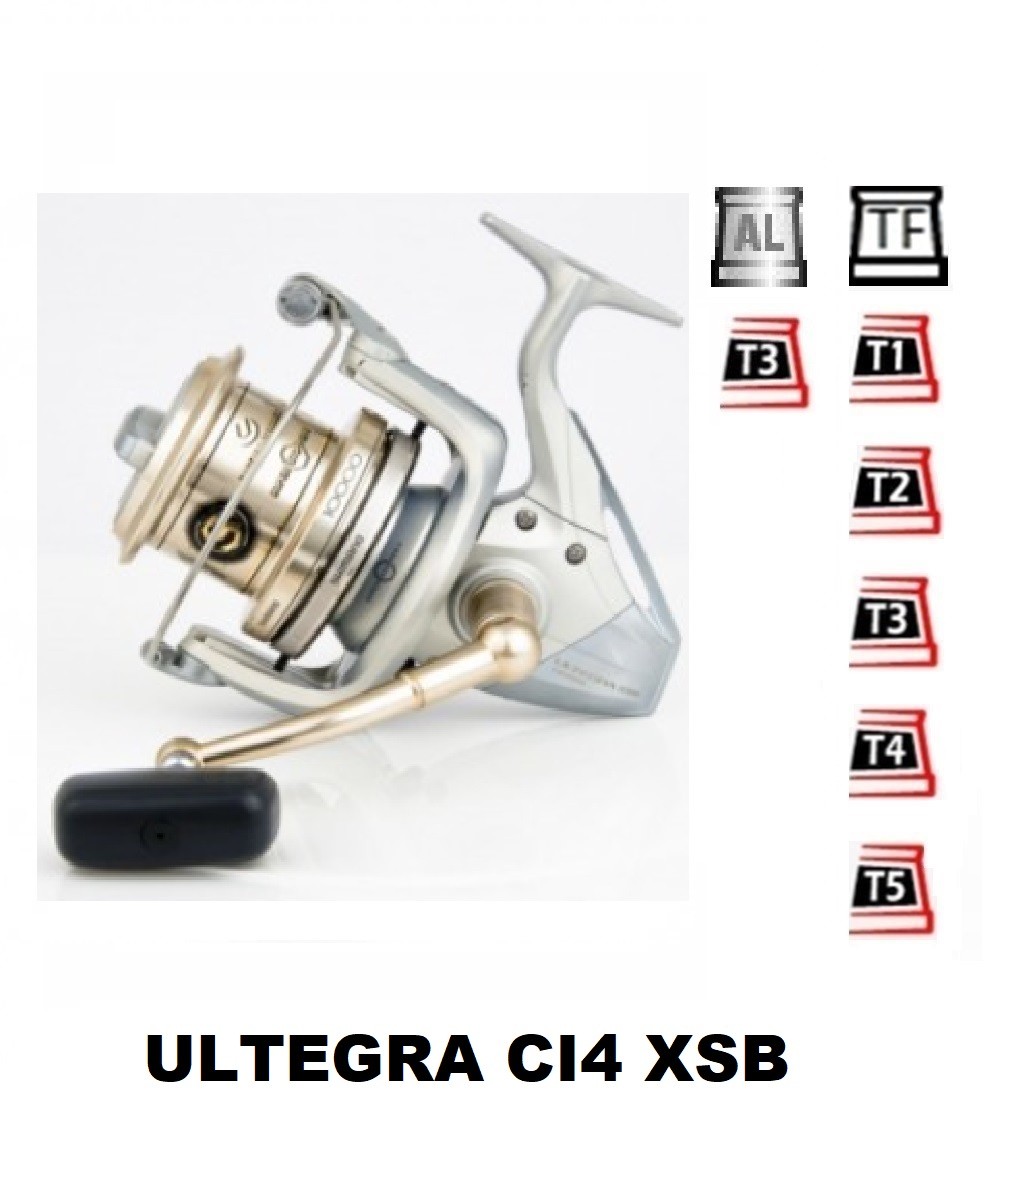 Ultegra Ci4 Xsb Spare Spools